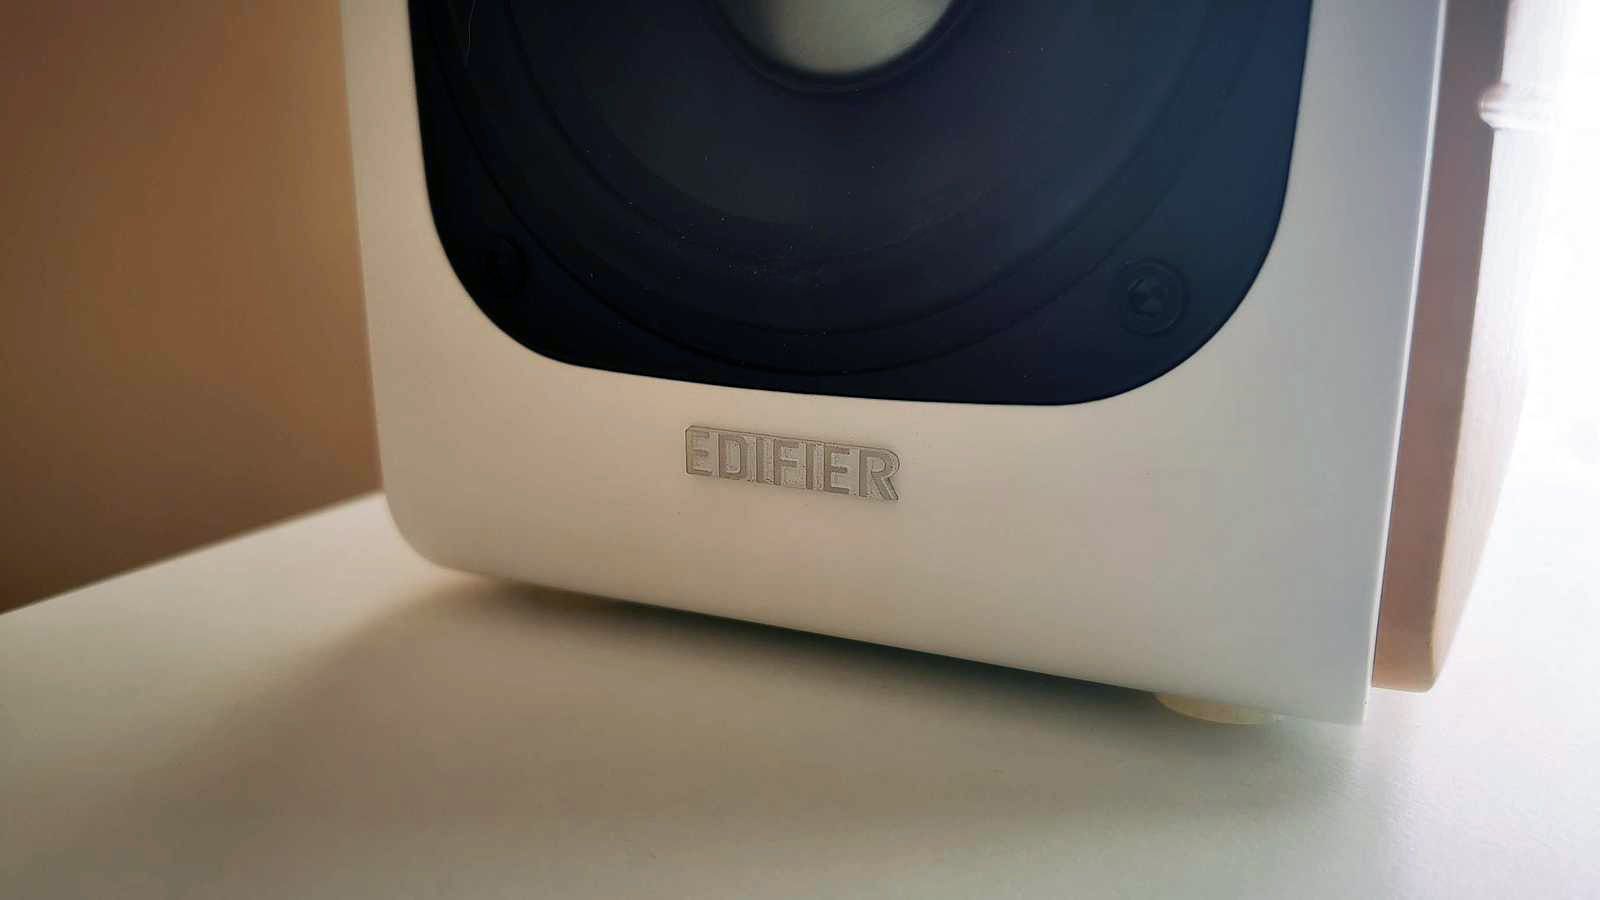 Edifier S880 DB logo on passive speaker front